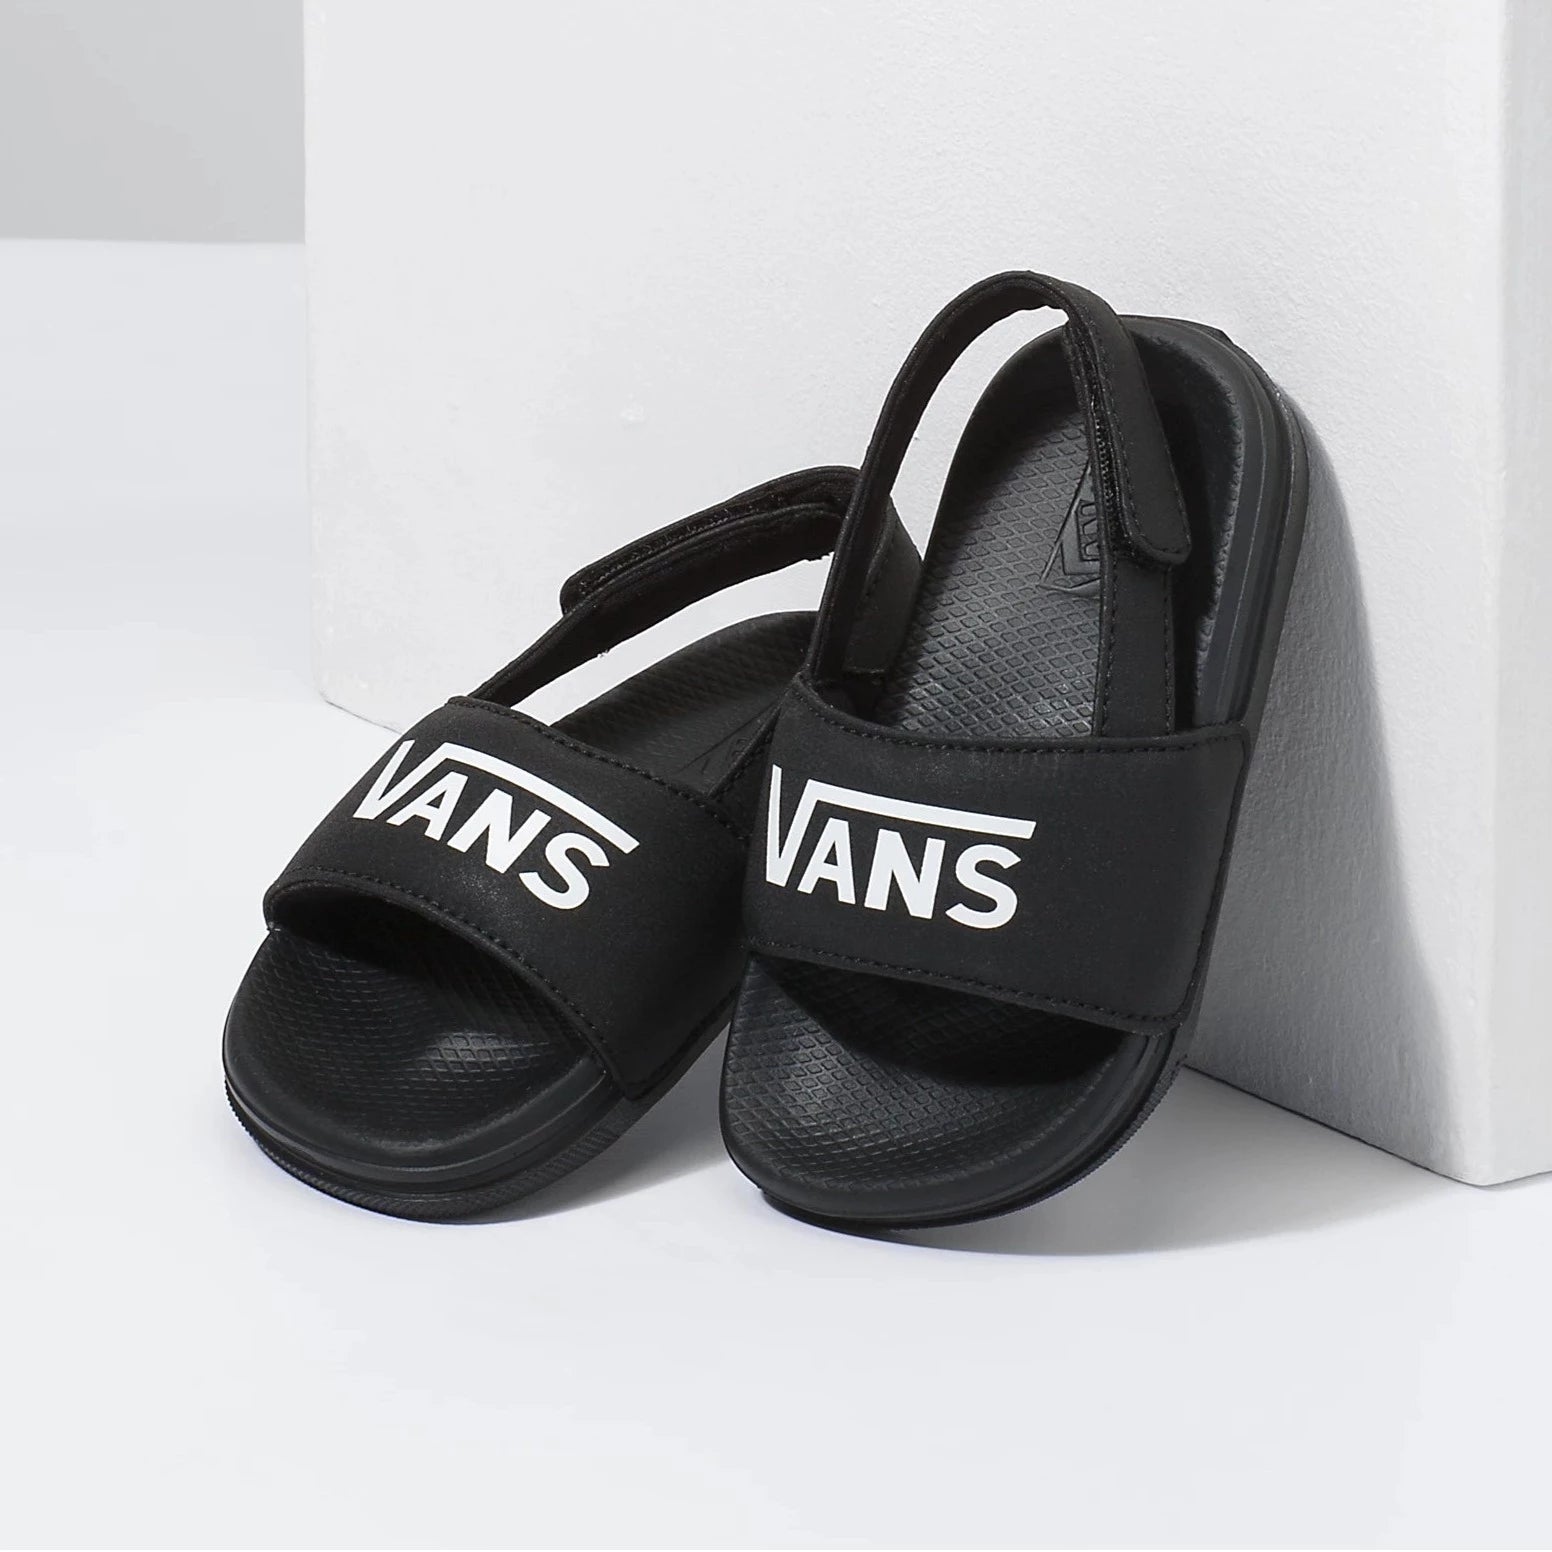 Vans Kids / Toddler Slides La Costa Slide On Sandals - Vans Black kids footwear Toddler 5